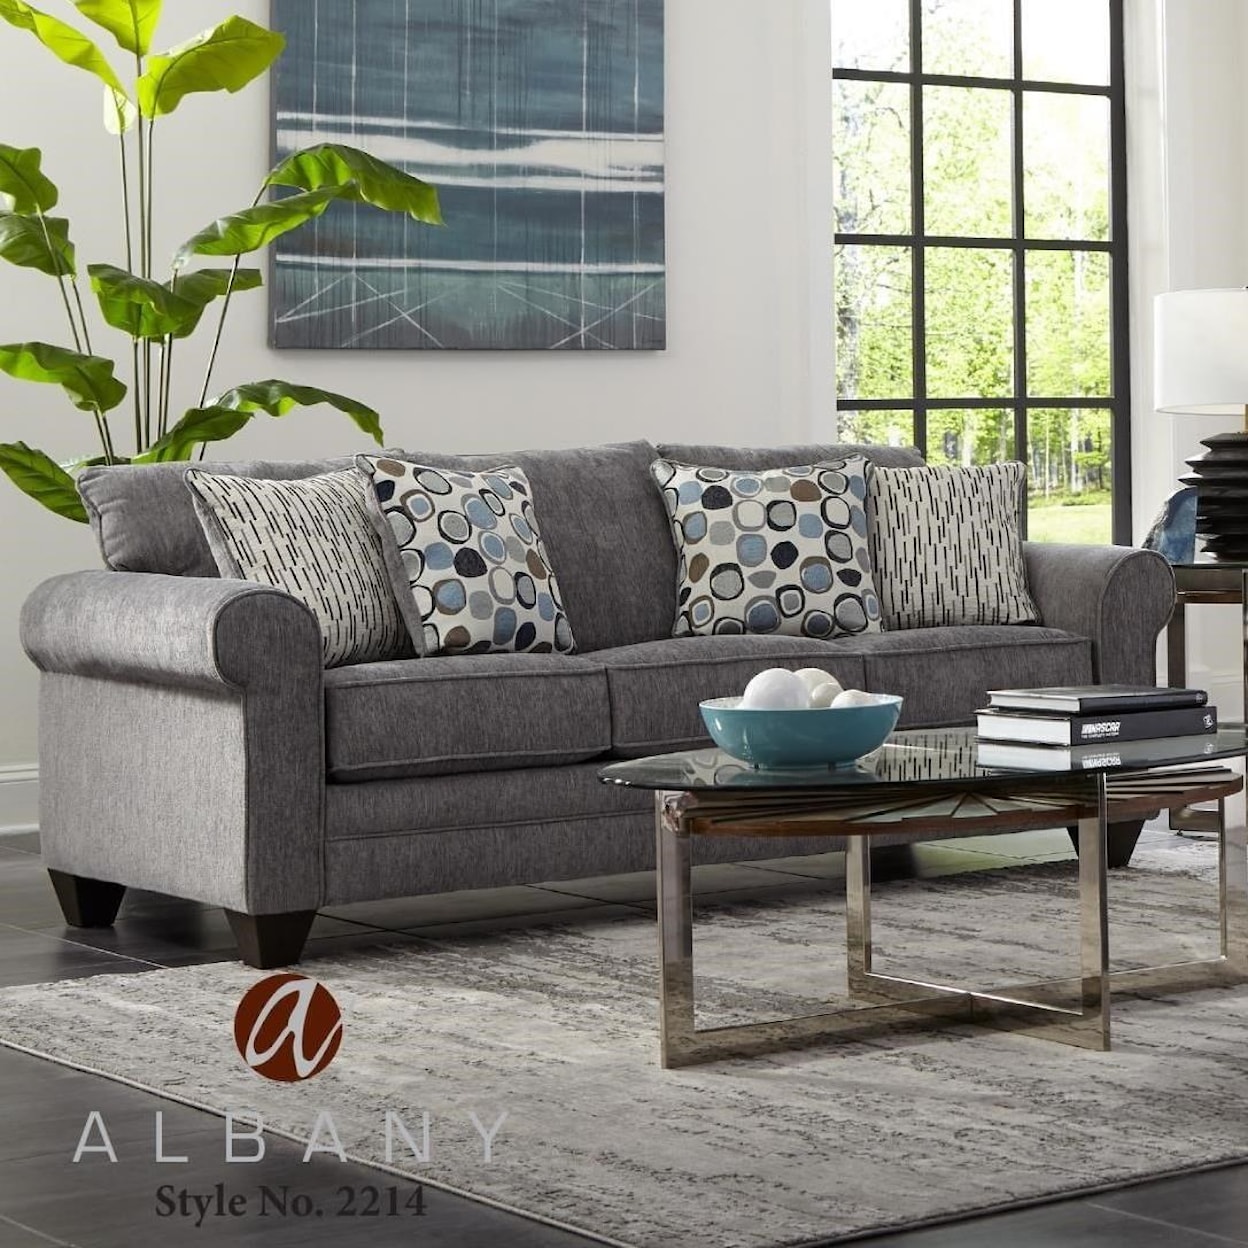 Albany 2214 Sofa